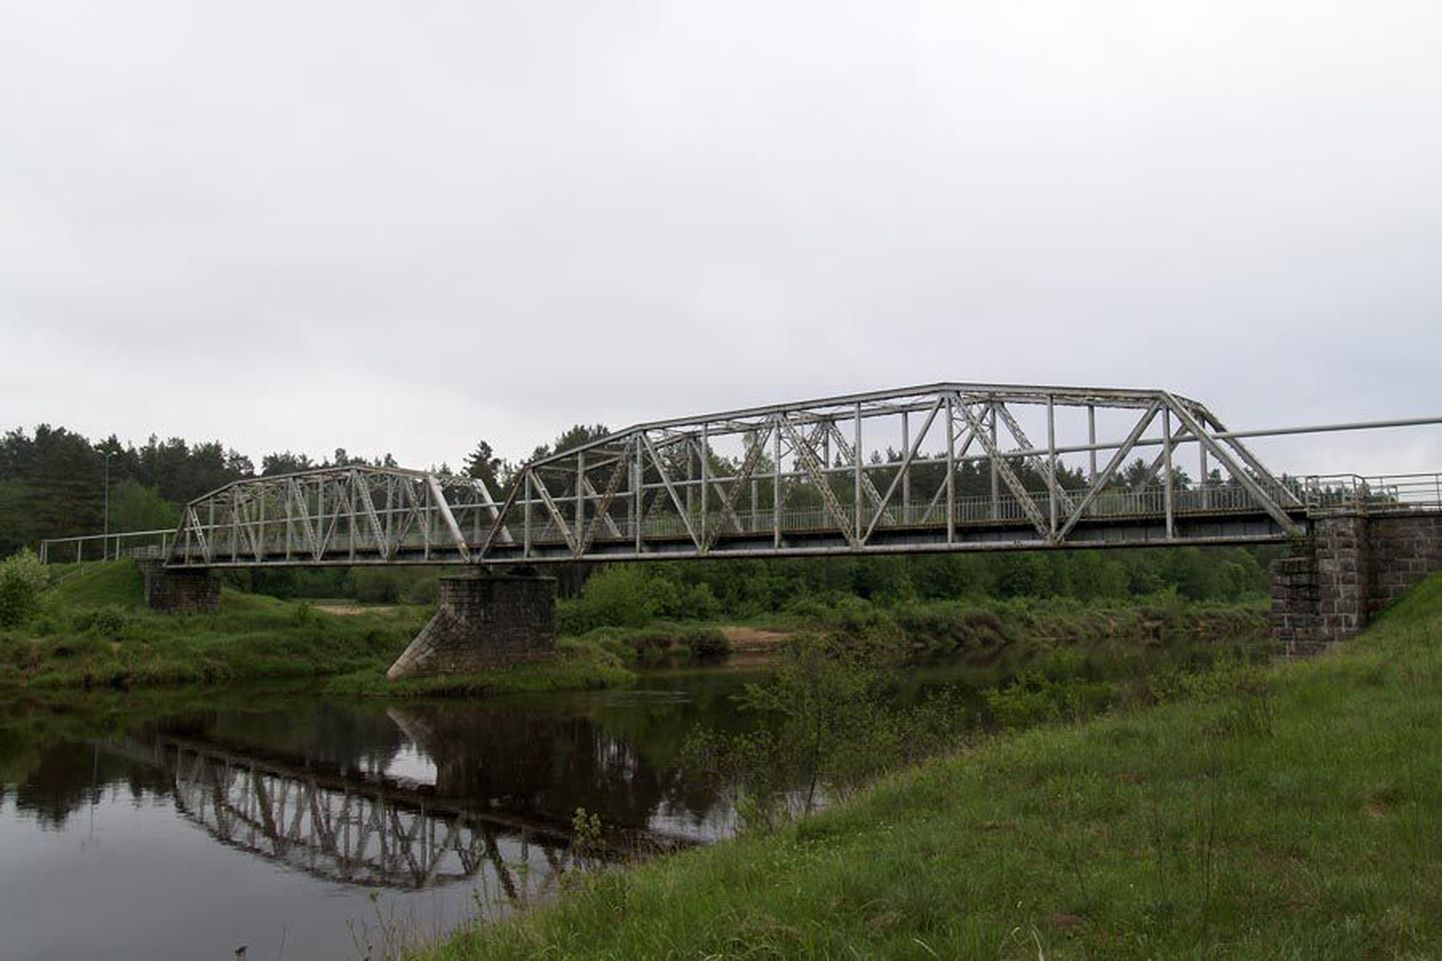 See sild oli kunagi osa Ainaži–Valmiera–Smiltene kitsarööpmelisest raudteest. Rööbastee ise kadus seitsmekümnendatel aastatel ja tänapäeval on sild koos raudteetammiga tervisesportlaste käsutuses.